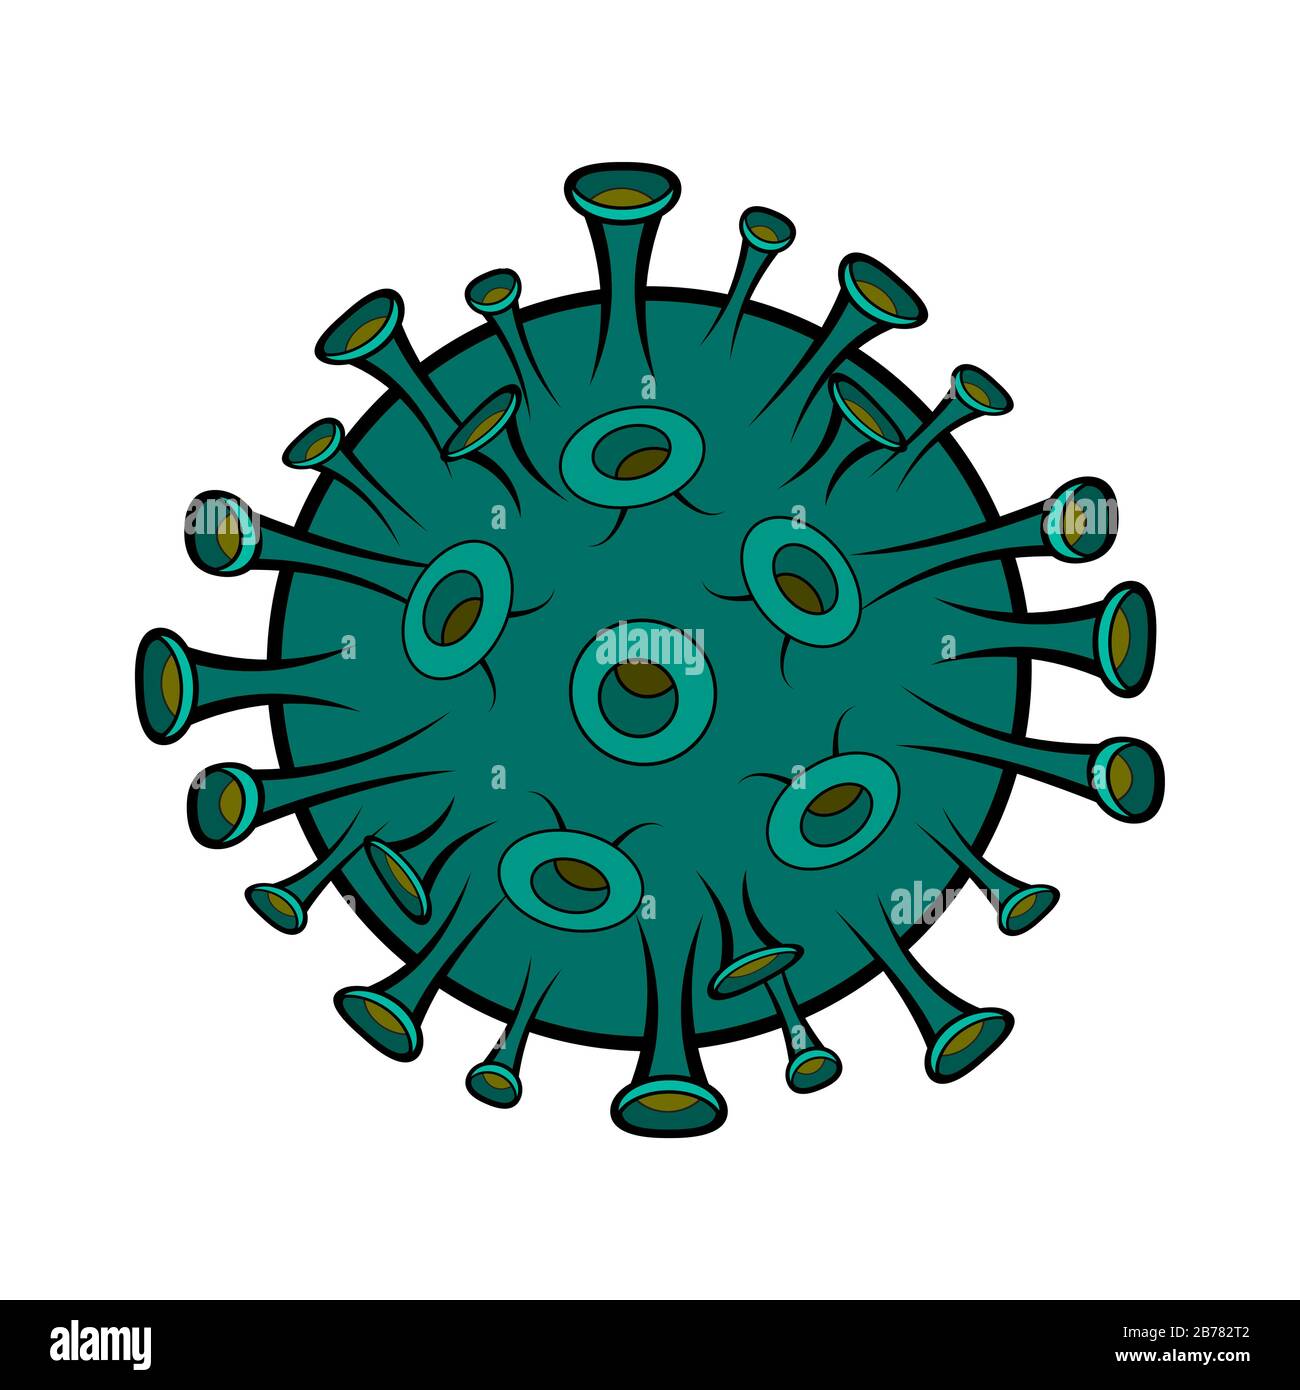 Coronavirus Cartoon Illustration isoliert auf weißem Hintergrund. Betet für china. Illustrationen Konzept Corona Virus COVID-19. Virus wuhan aus china. Stock Vektor